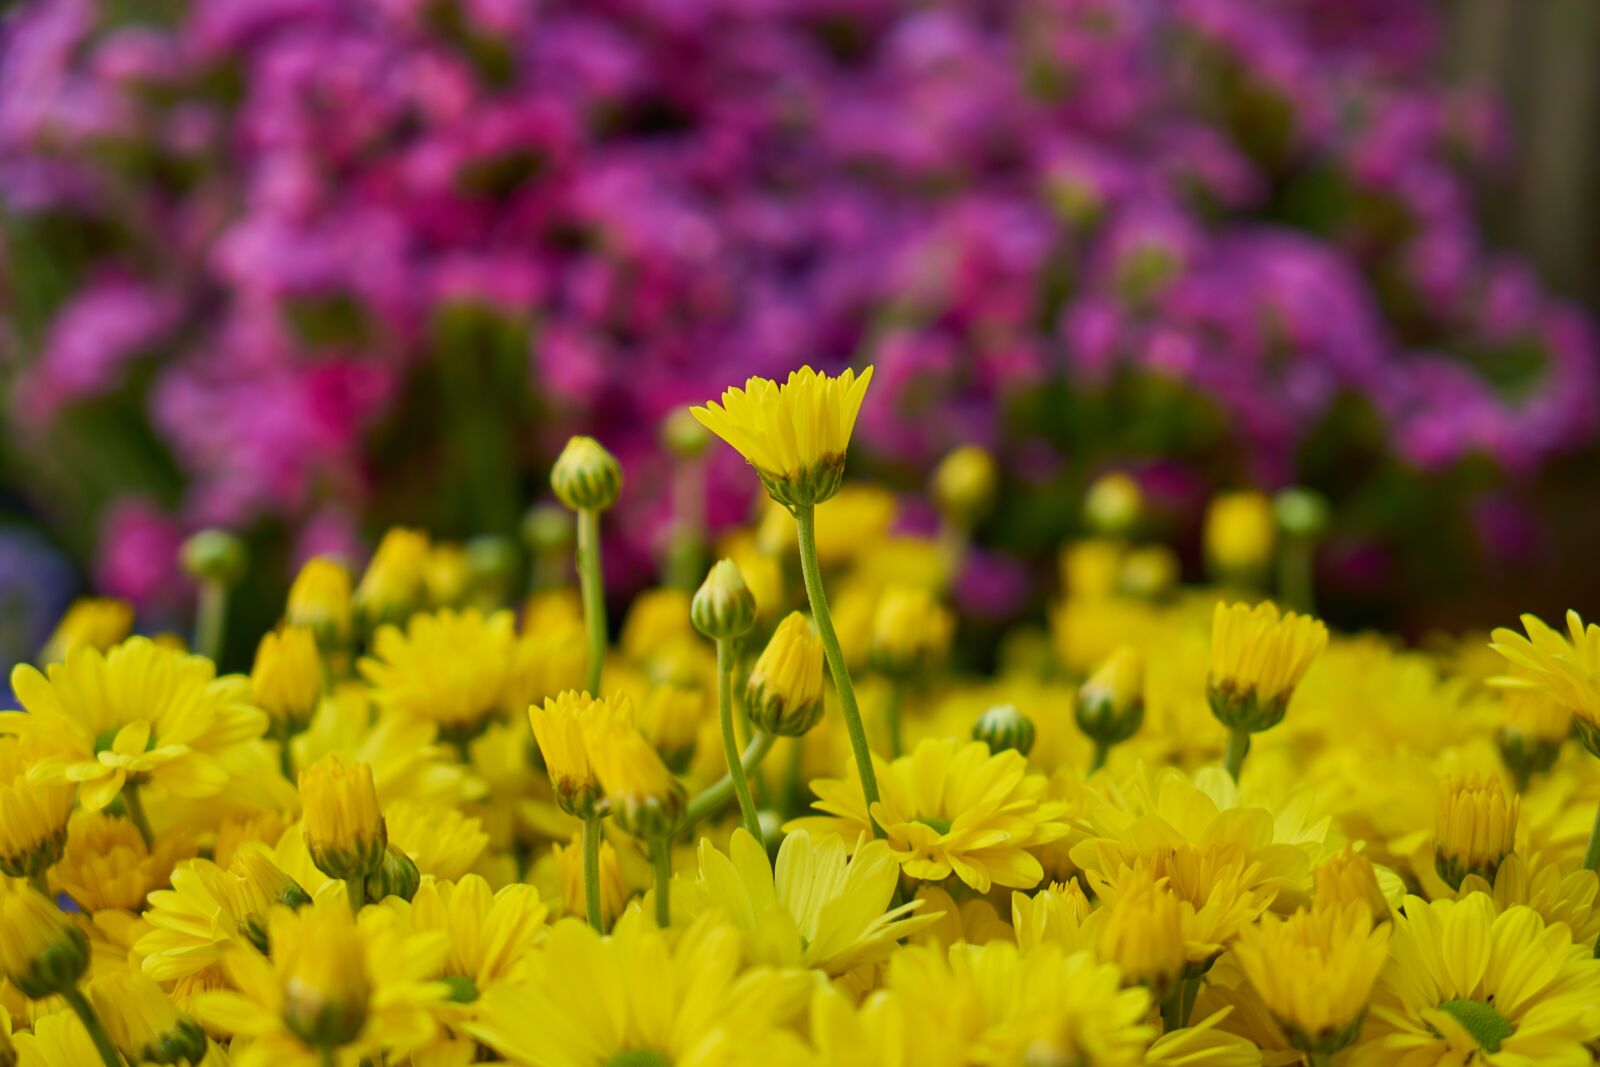 Sony Vario Tessar T* FE 24-70mm F4 ZA OSS sample photo. Flowers, yellow, plant photography